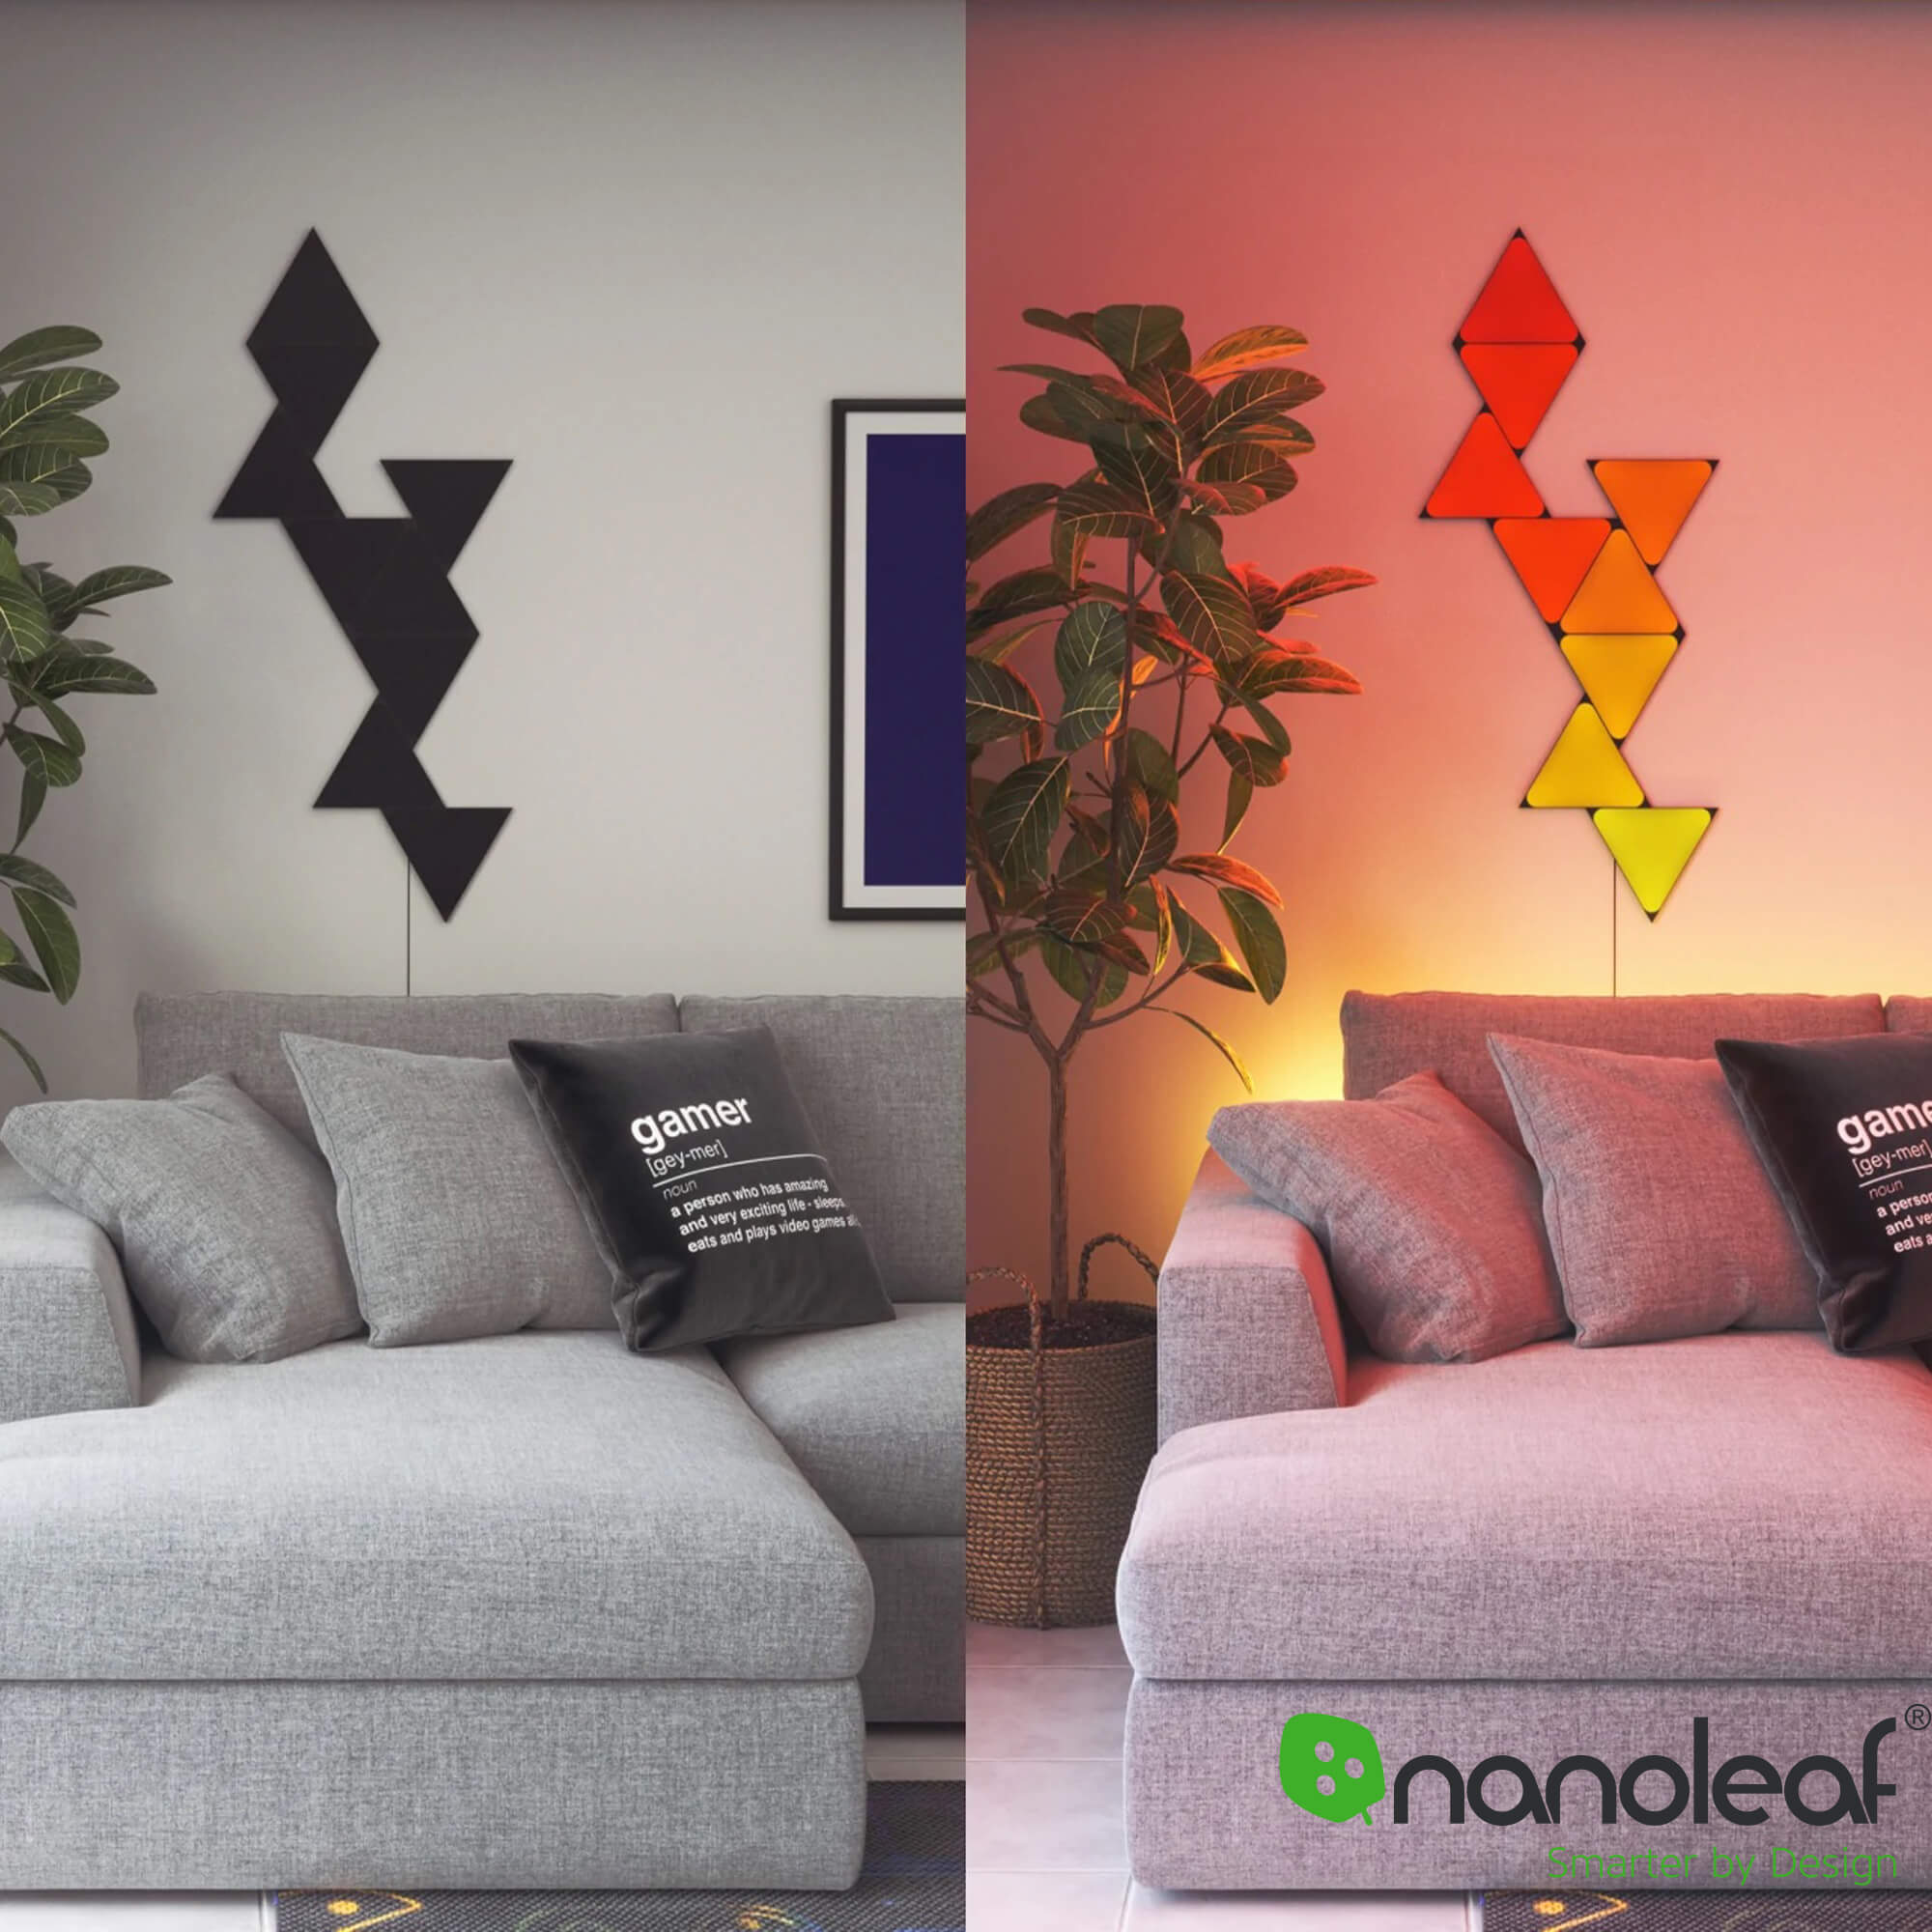 Nanoleaf black triangle lights shown turned off and on in a living room setup.